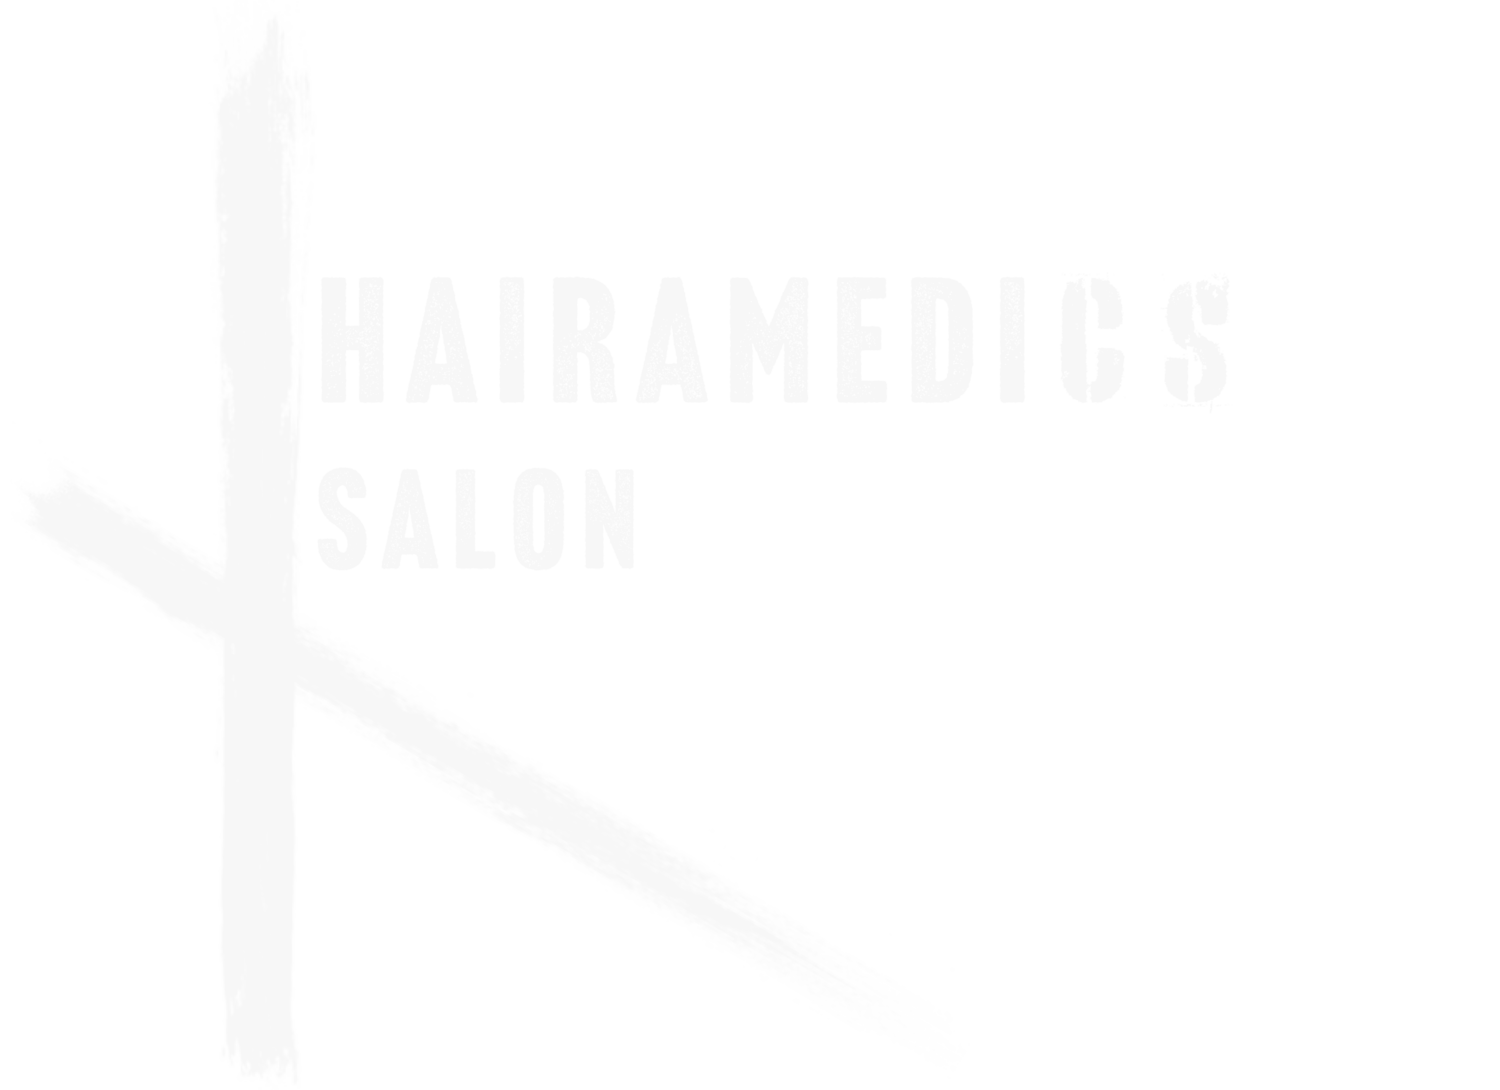 Hairamedics Salon